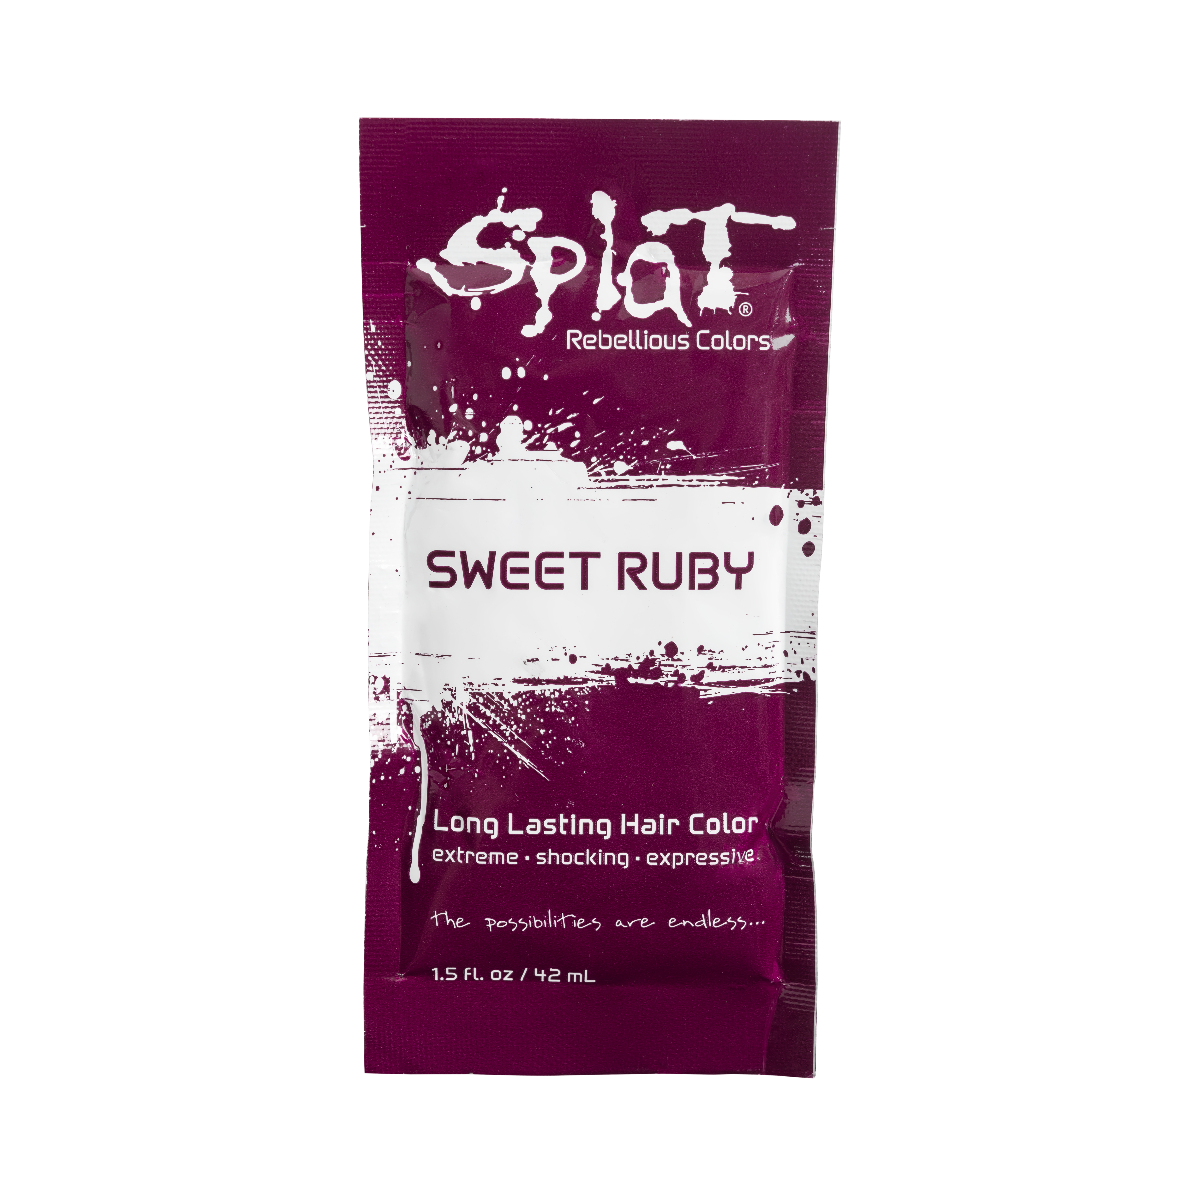 Splat Hair Dye Original Singles Foil Packet in Sweet Ruby Red Semi-Permanent Hair Dye